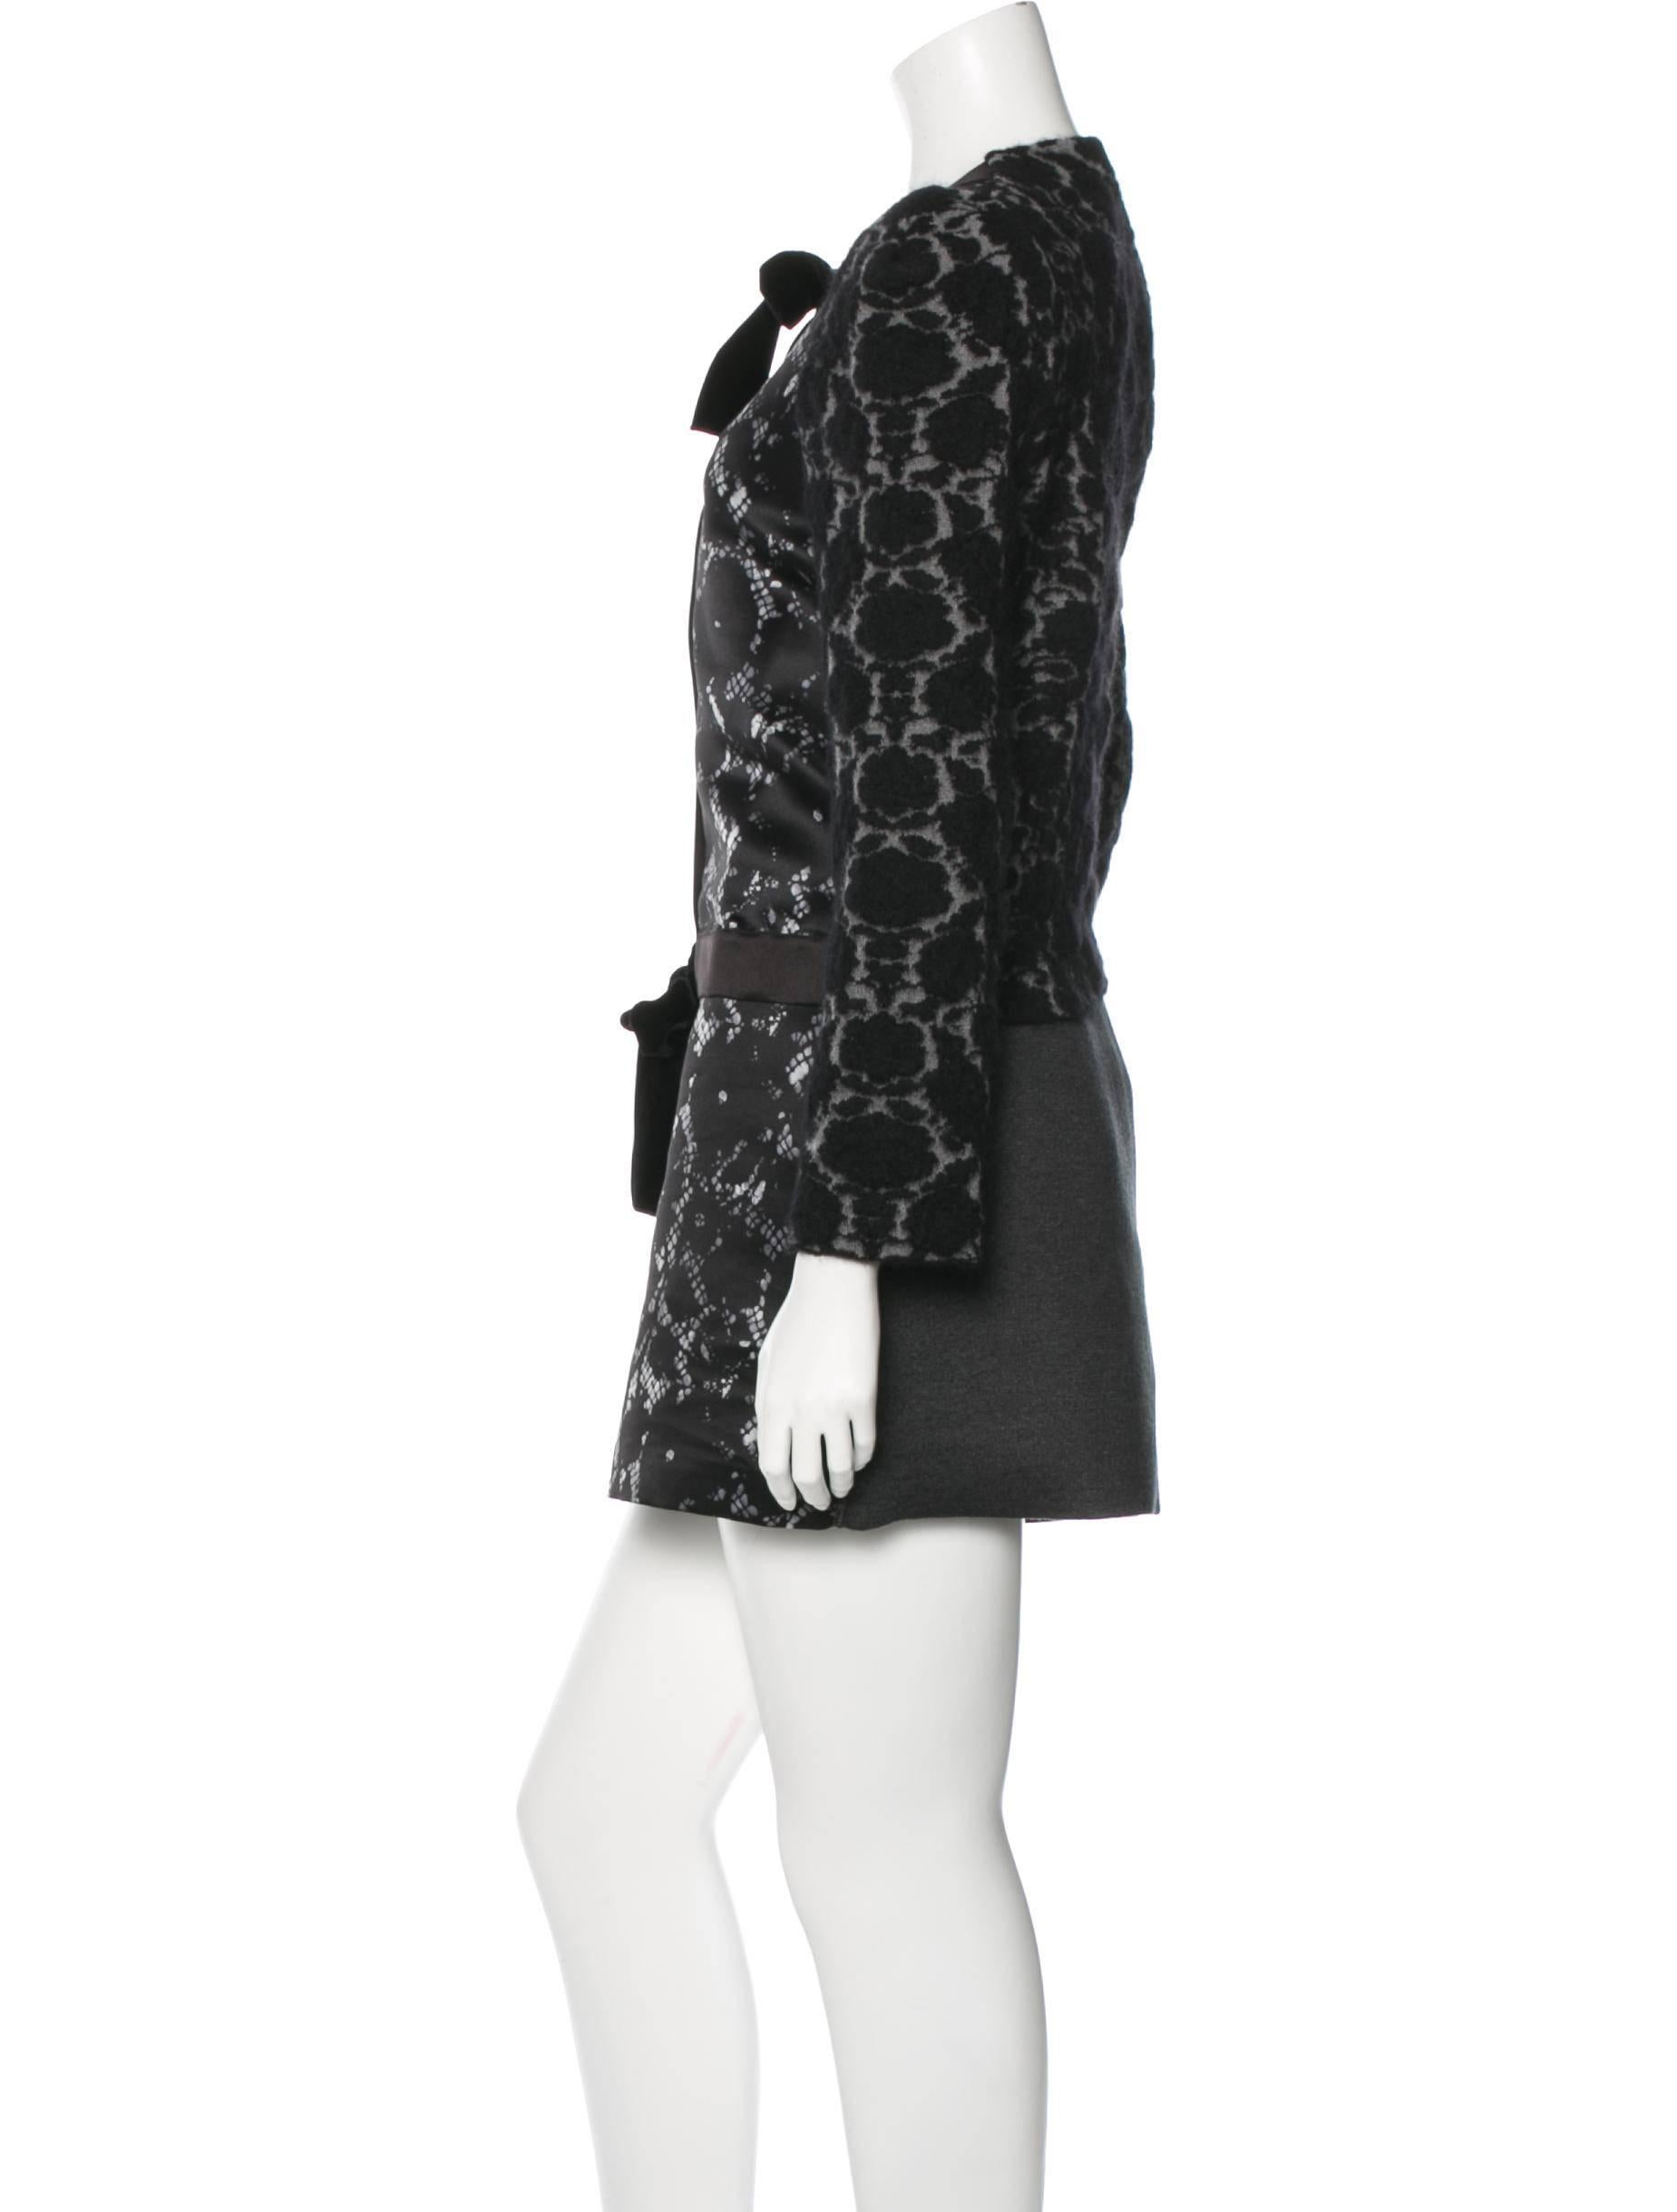 Women's Louis Vuitton NEW Runway Black Lace Jacquard Evening Cocktail Skirt Jacket Suit